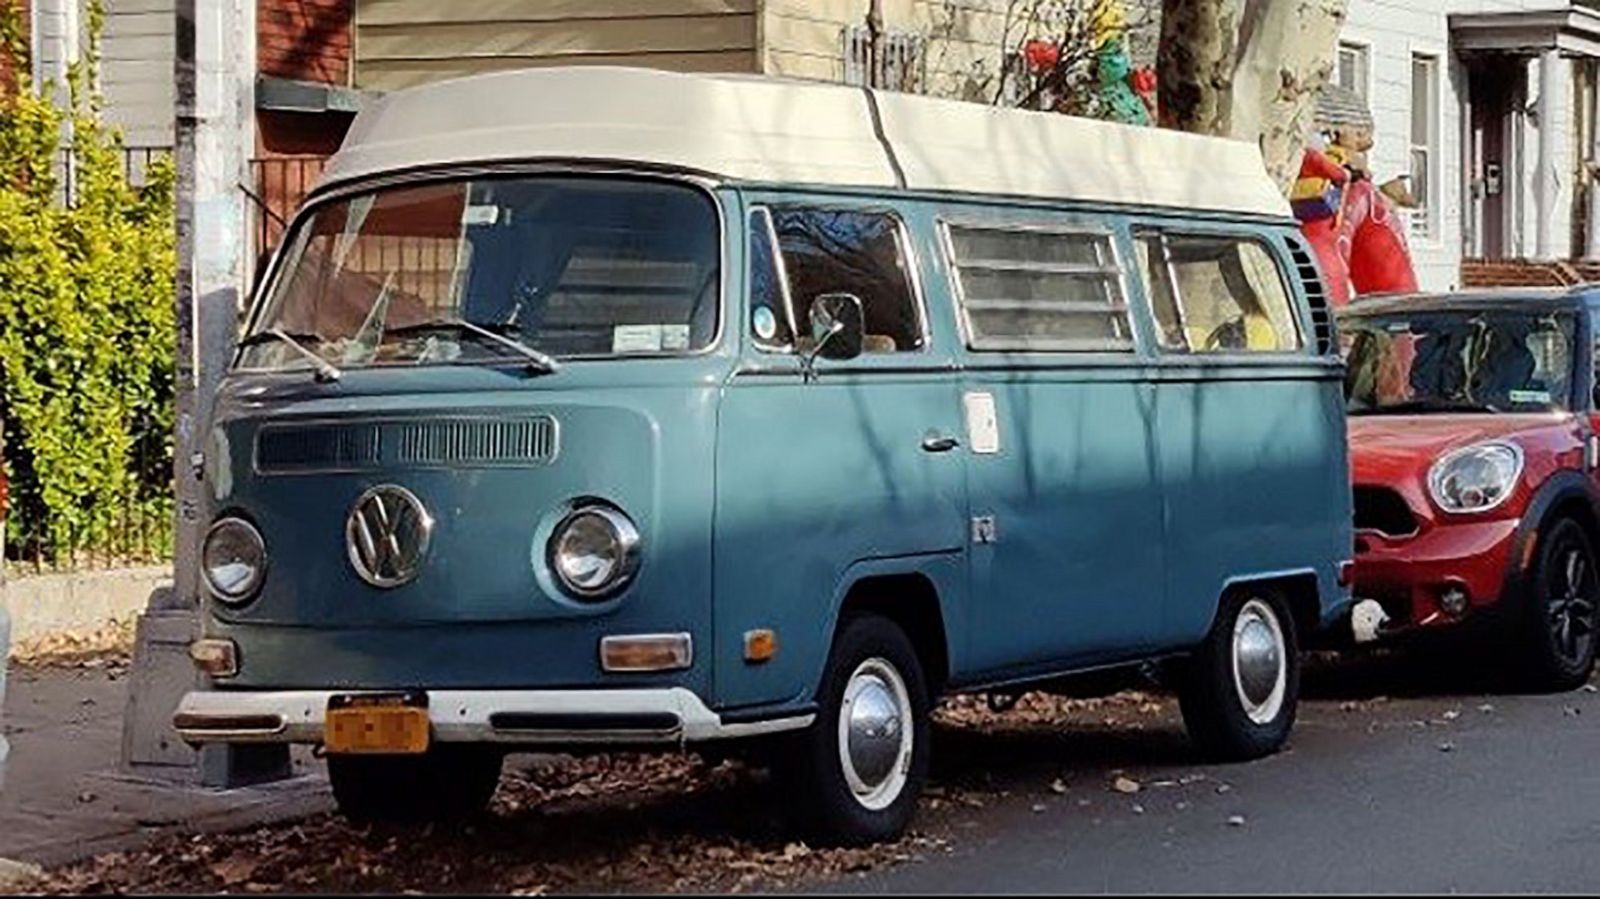 rand Wonderbaarlijk Uitstekend Return of the Microbus? Volkswagen unveils electric 'hippie bus' - ABC News